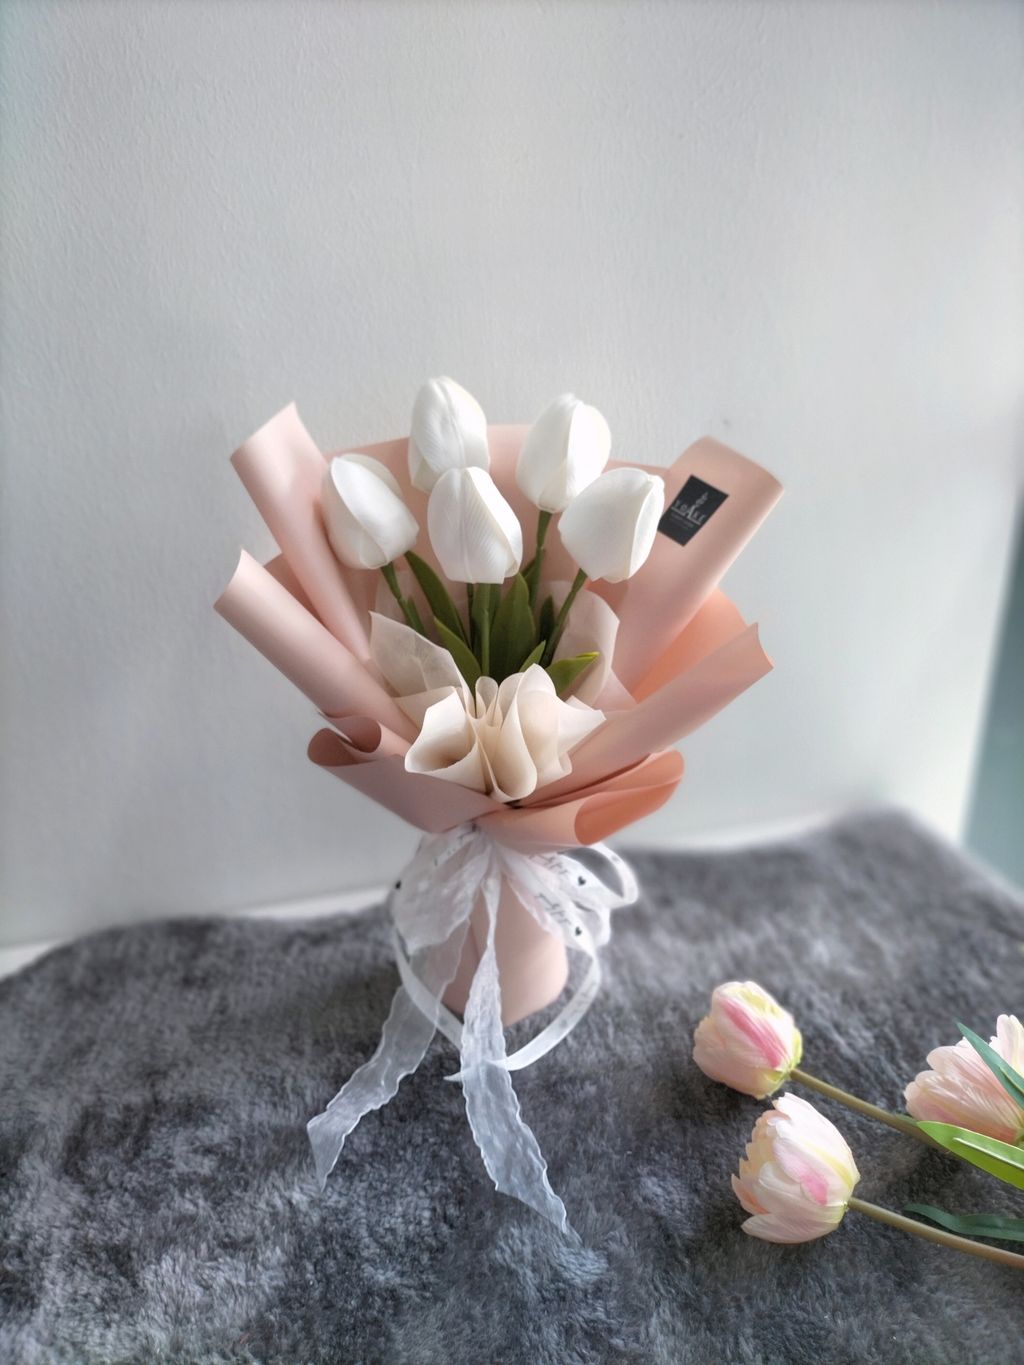 yoake_florist_kl_white_tulip_soap_flower